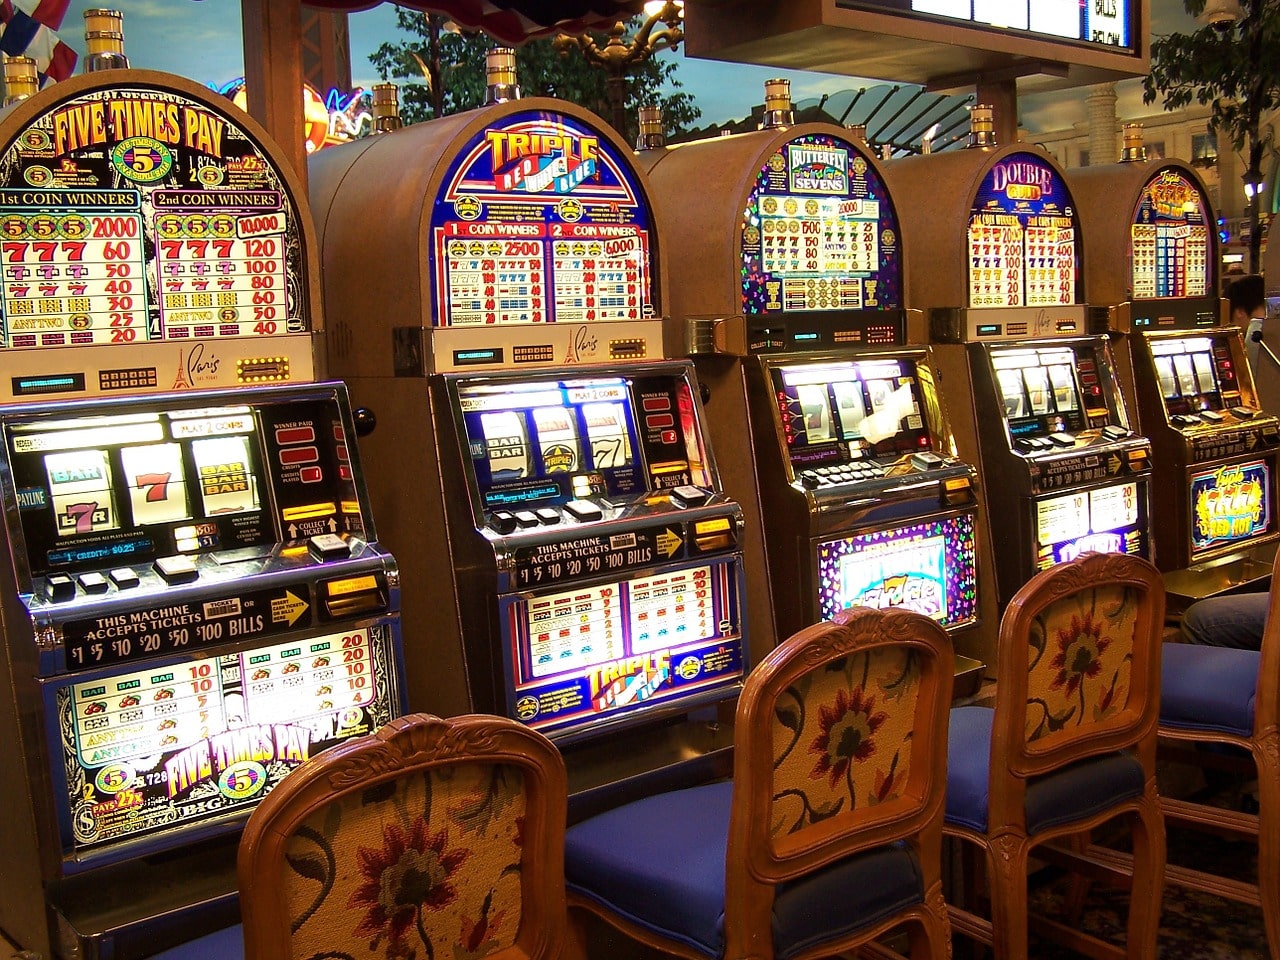 online casino minimum deposit 1 dollar